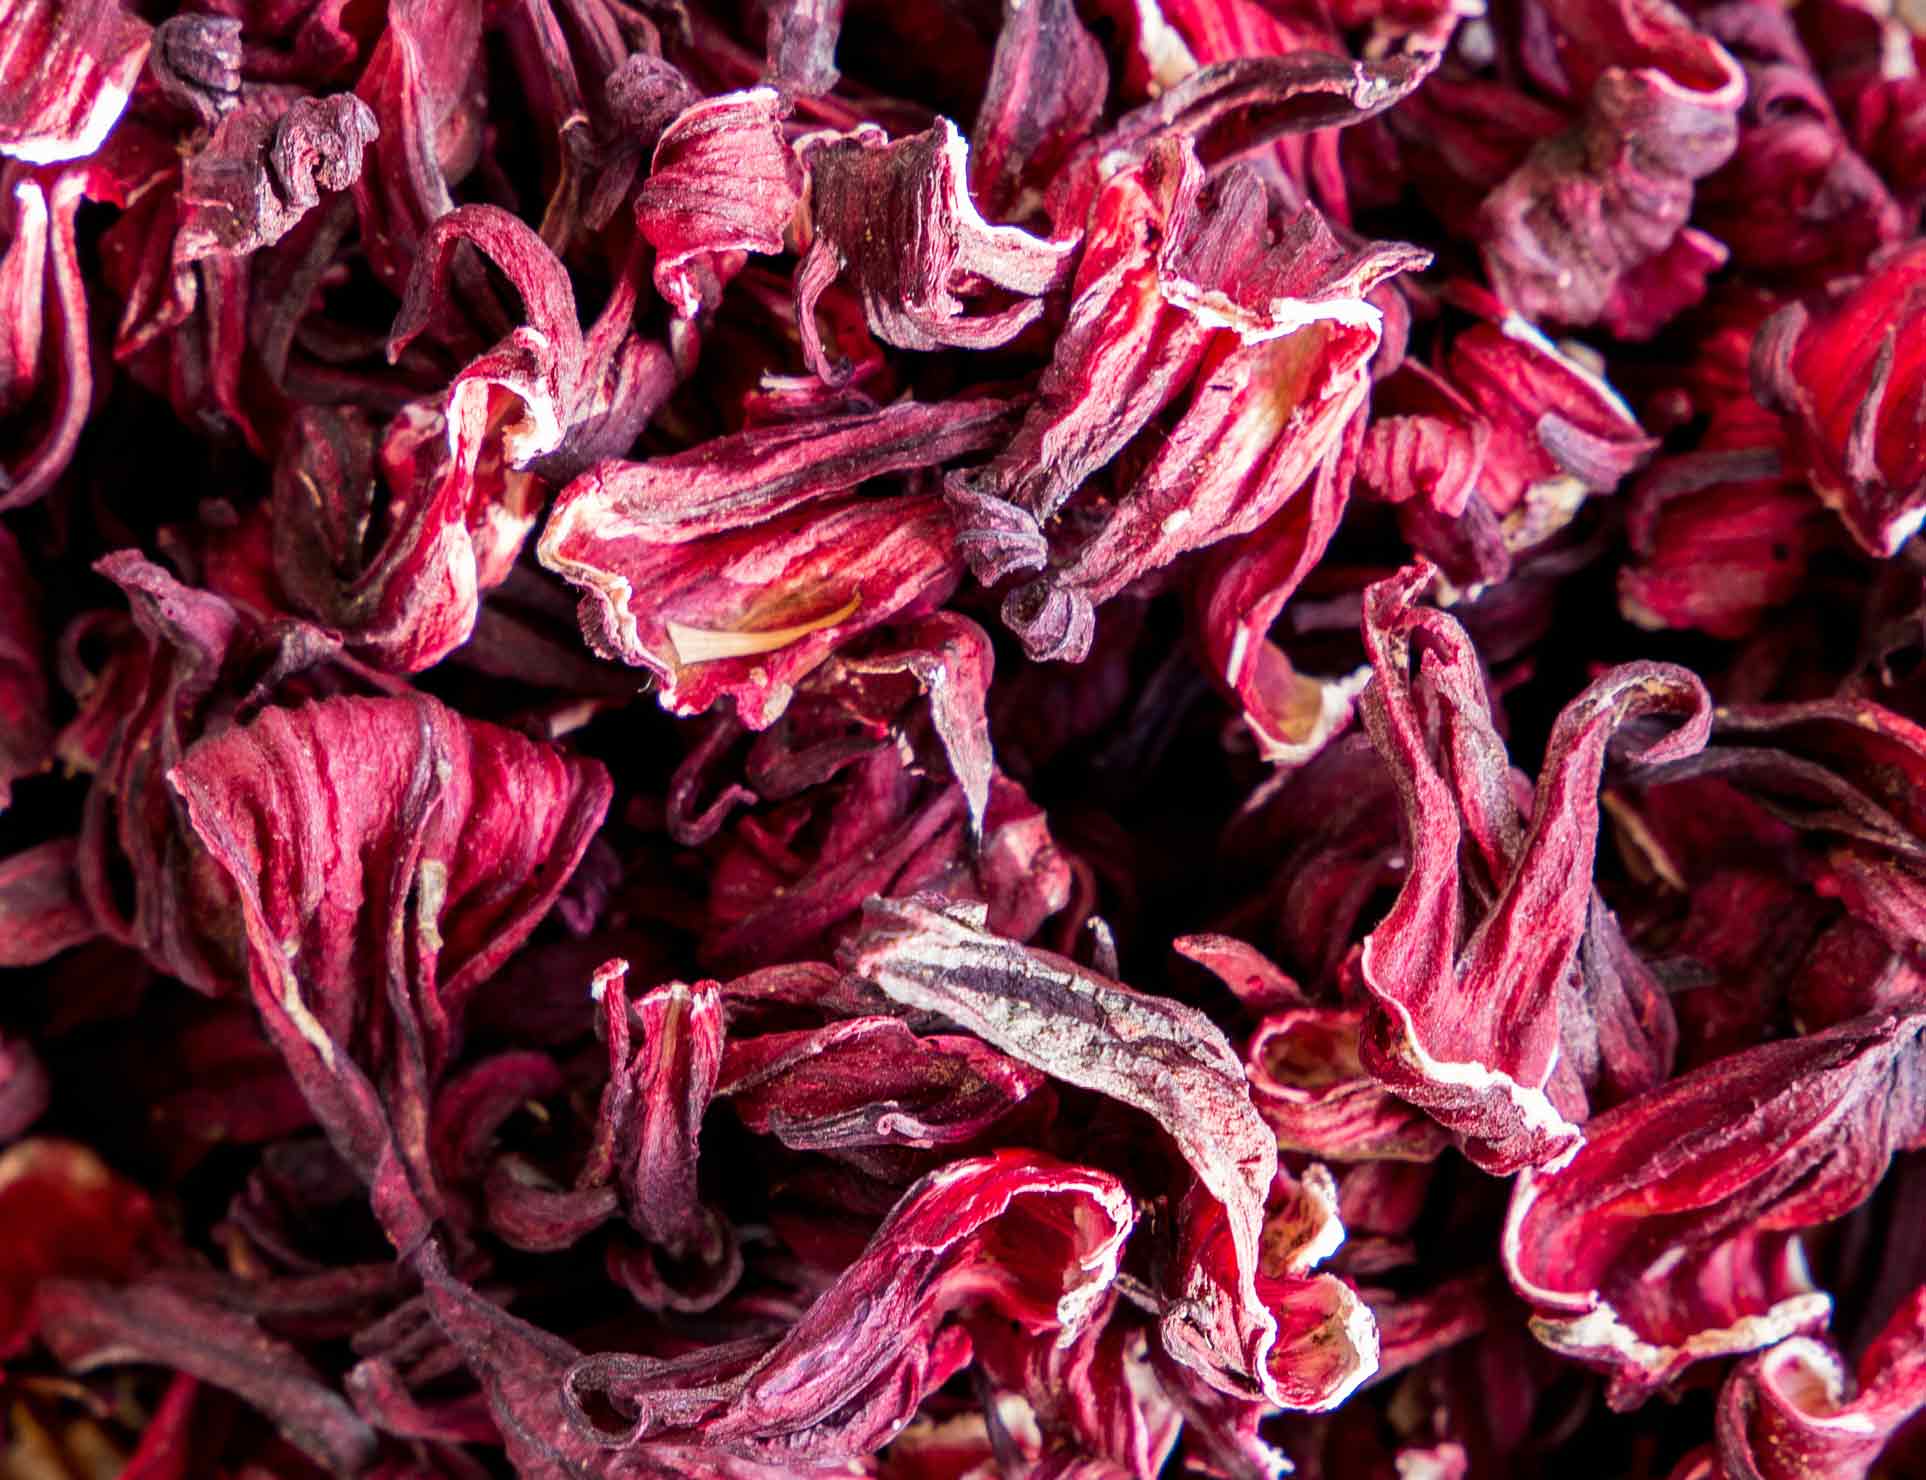 dried Hibiscus plant, Hibiscus tea - Hibiscus, roselle, karkade